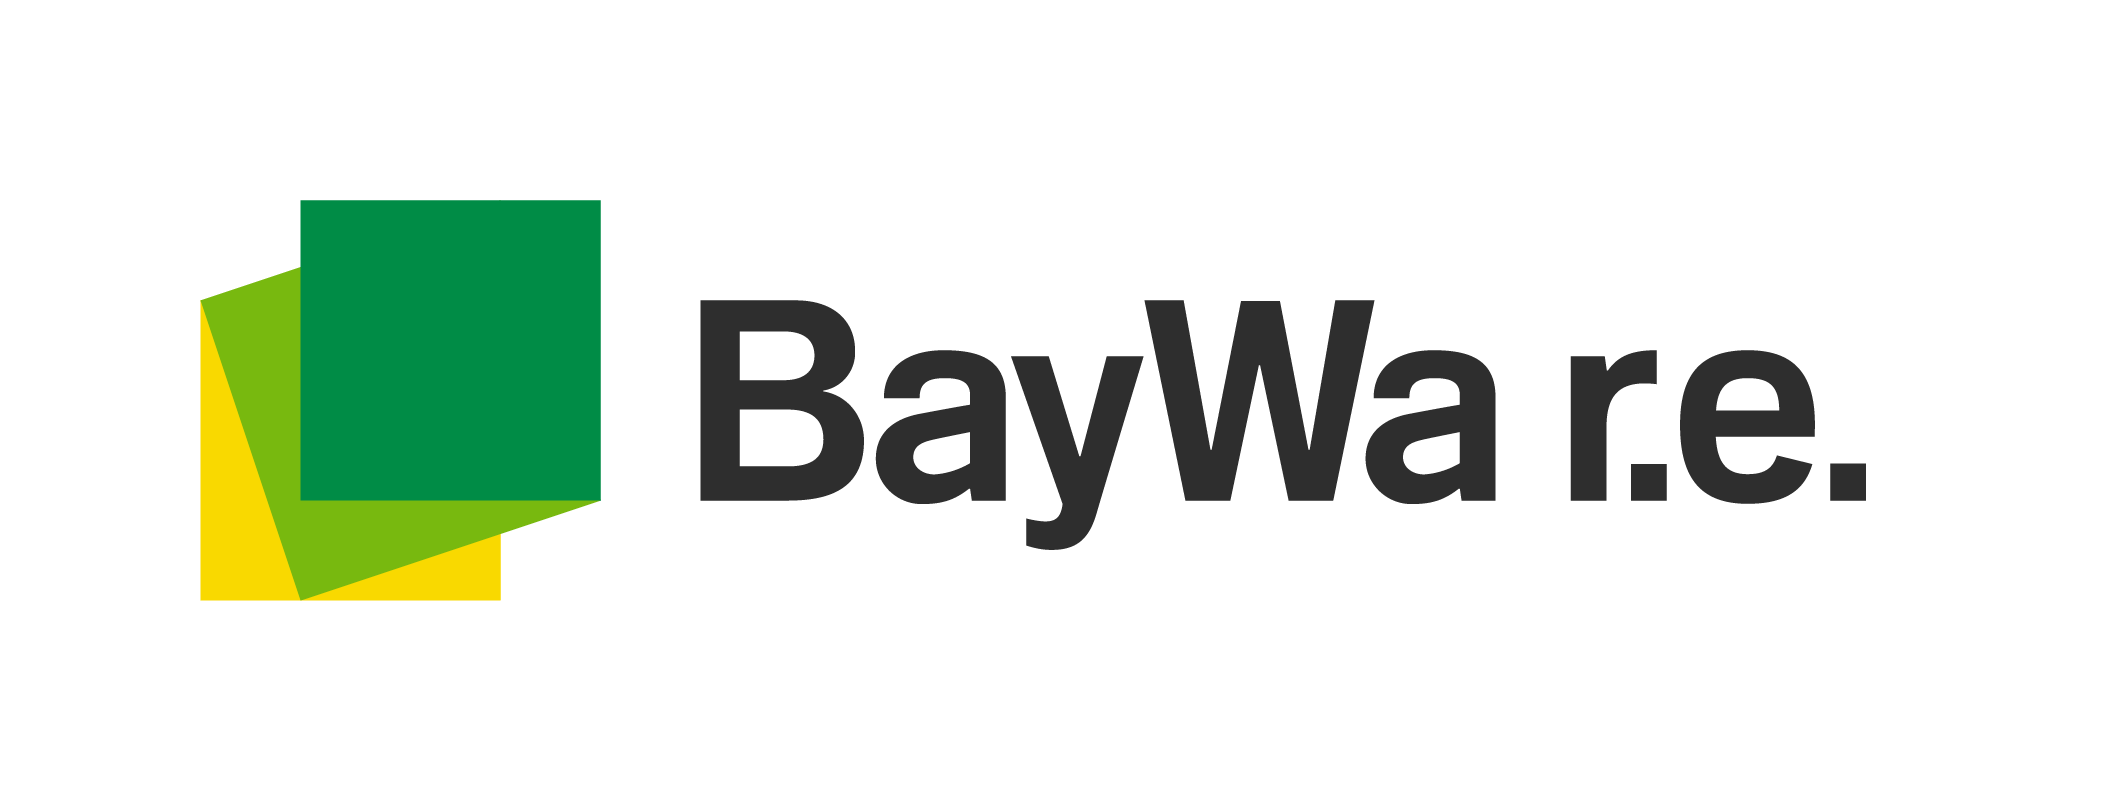 BayWar-re_BD_RGB